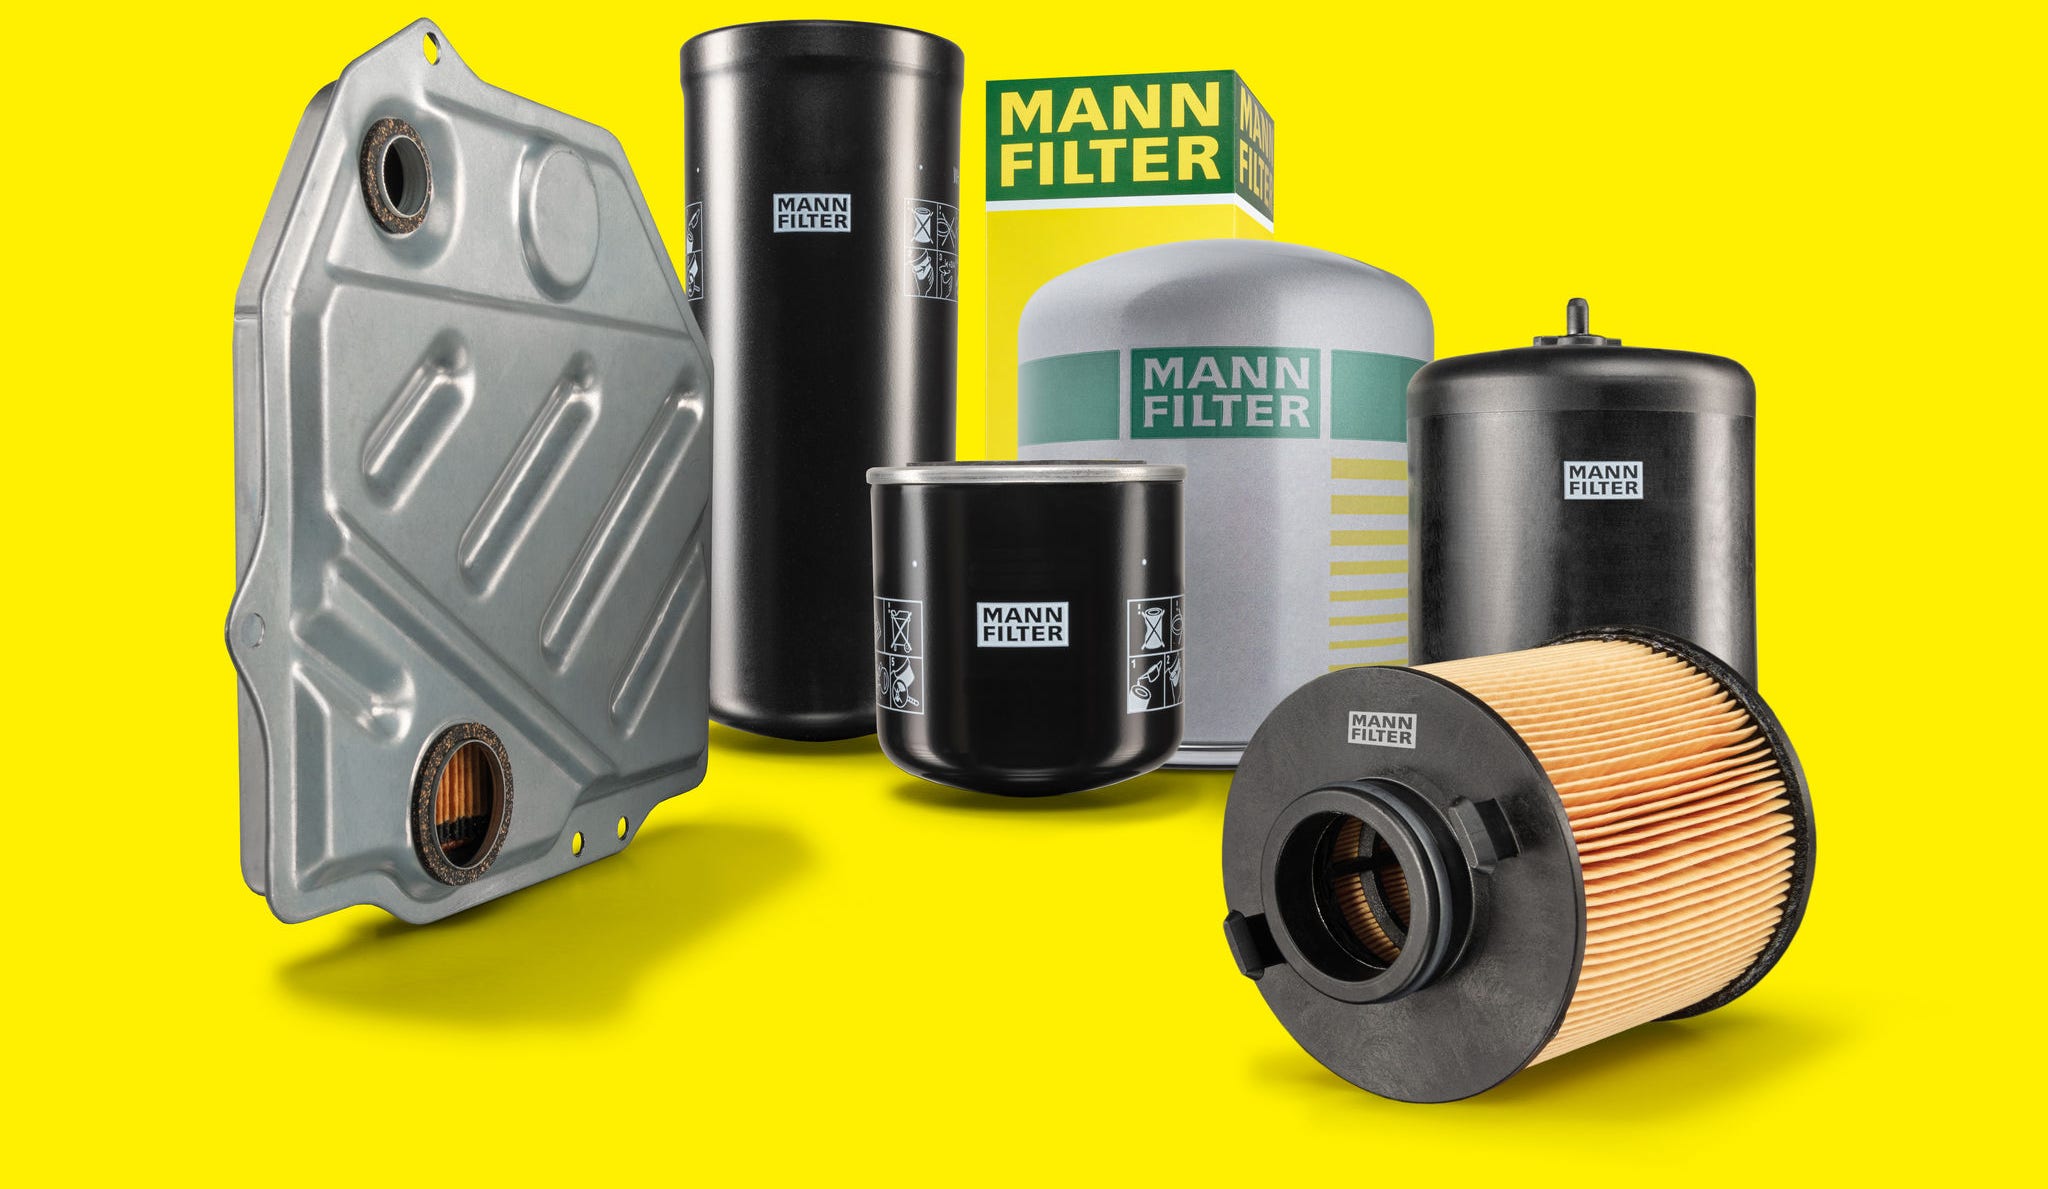 MANN-FILTER bietet ein großes Produktportfolio an Spezialfiltern